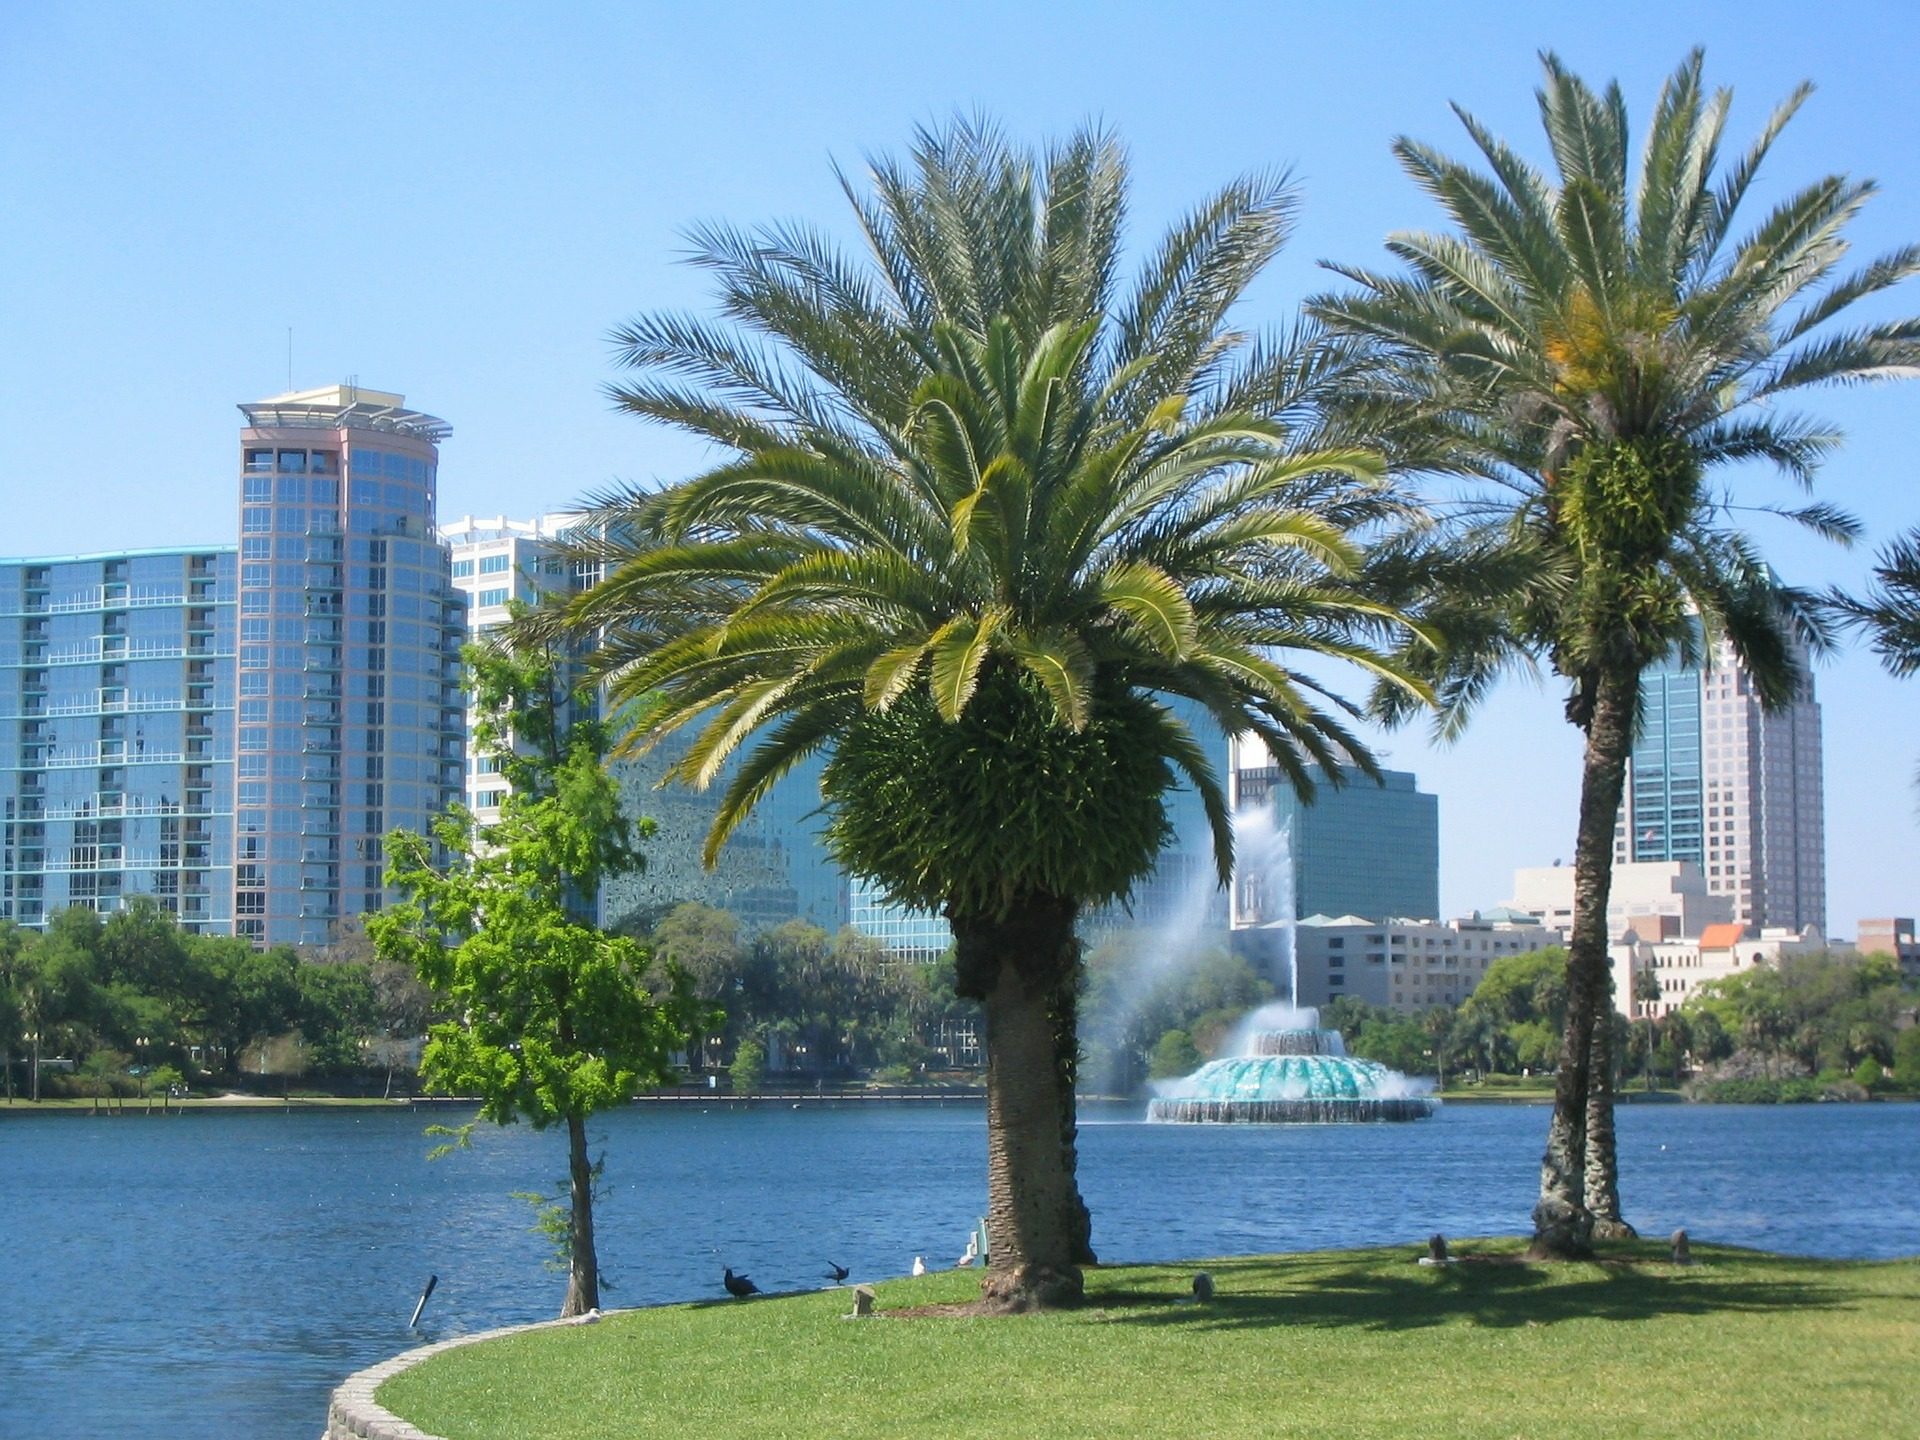 Städtereise nach Orlando - eine Woche Florida ab 579,00€